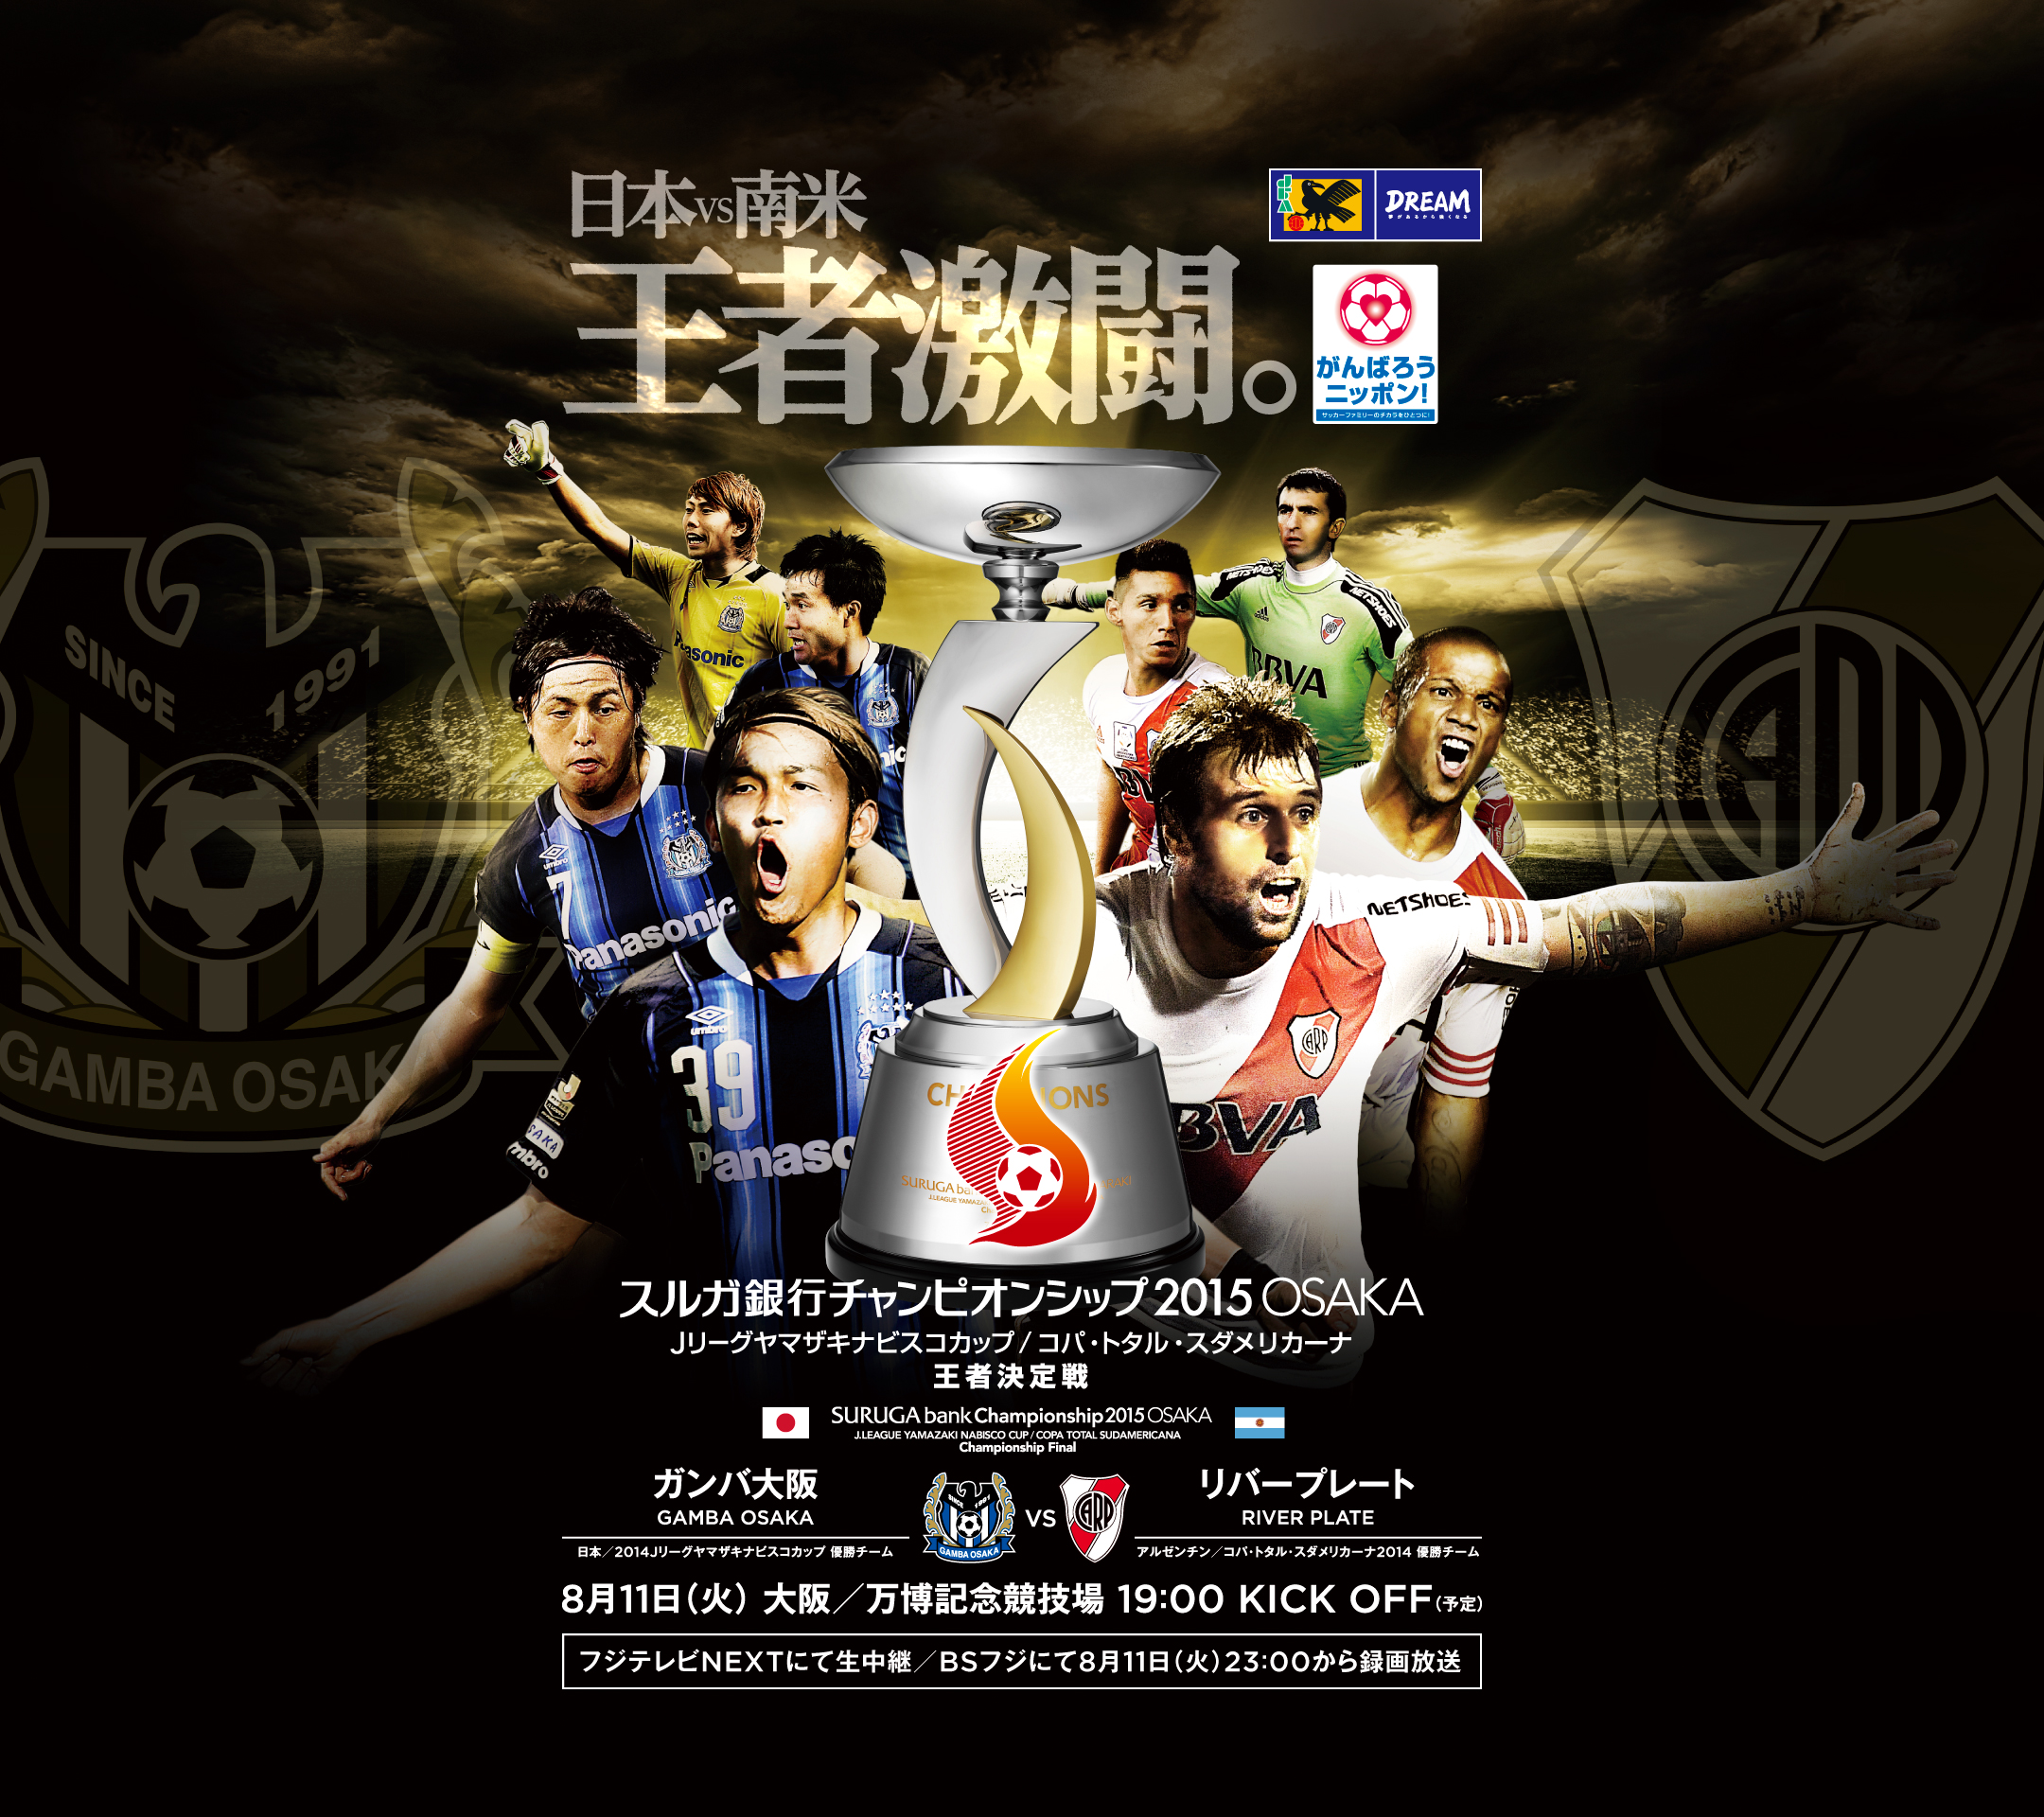 壁紙 ポスター スルガ銀行チャンピオンシップ15osaka 日本サッカー協会